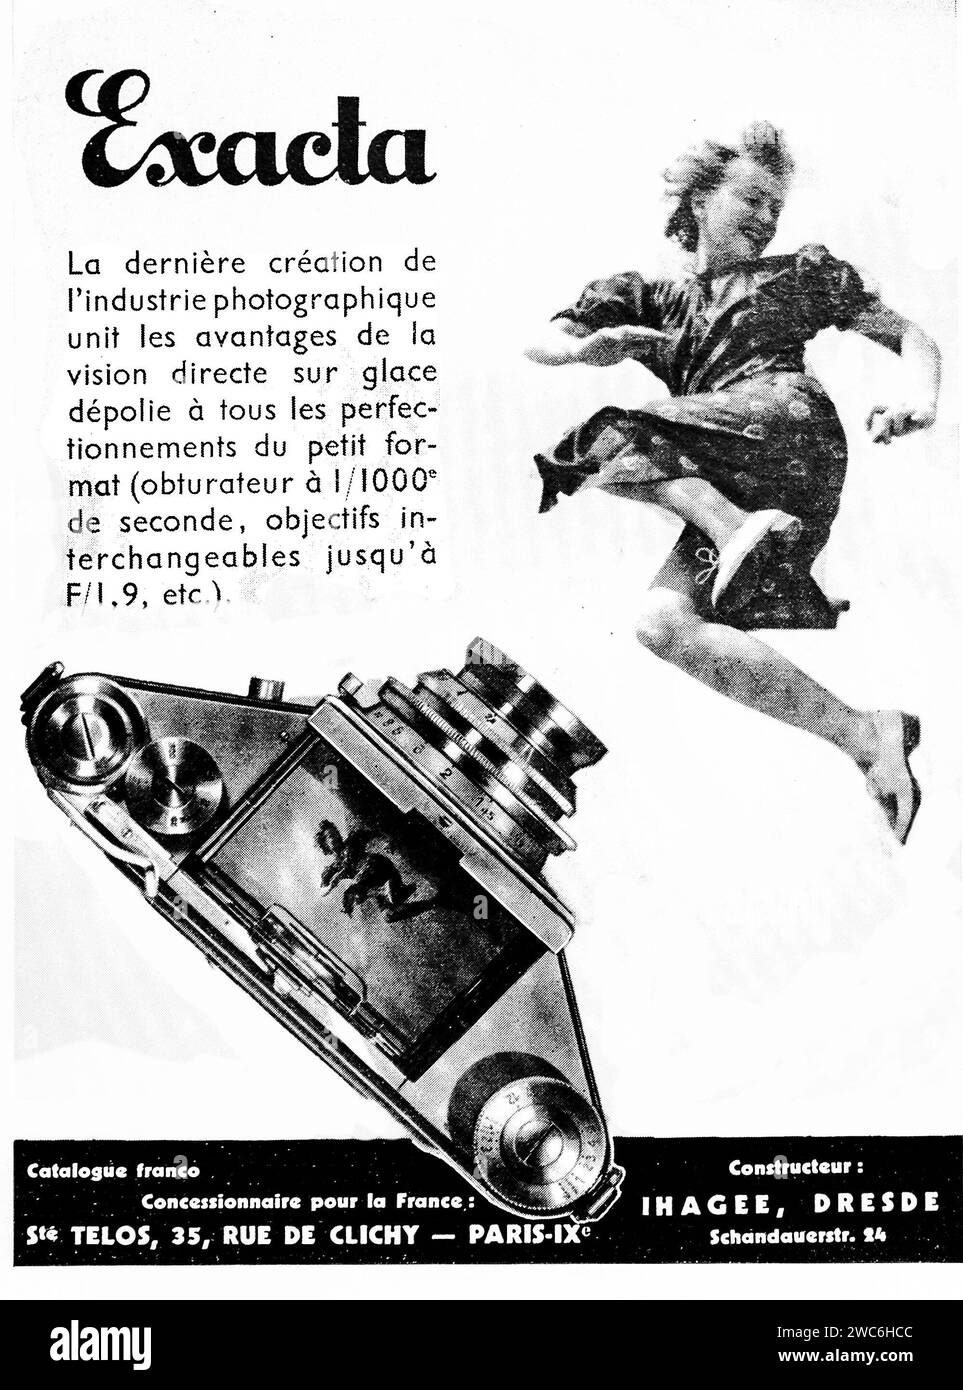 Une publicité imprimée vintage 1938 présentant l'appareil photo Exakta, mettant en évidence ses caractéristiques dans un contexte où une femme saute apparemment de joie. Banque D'Images